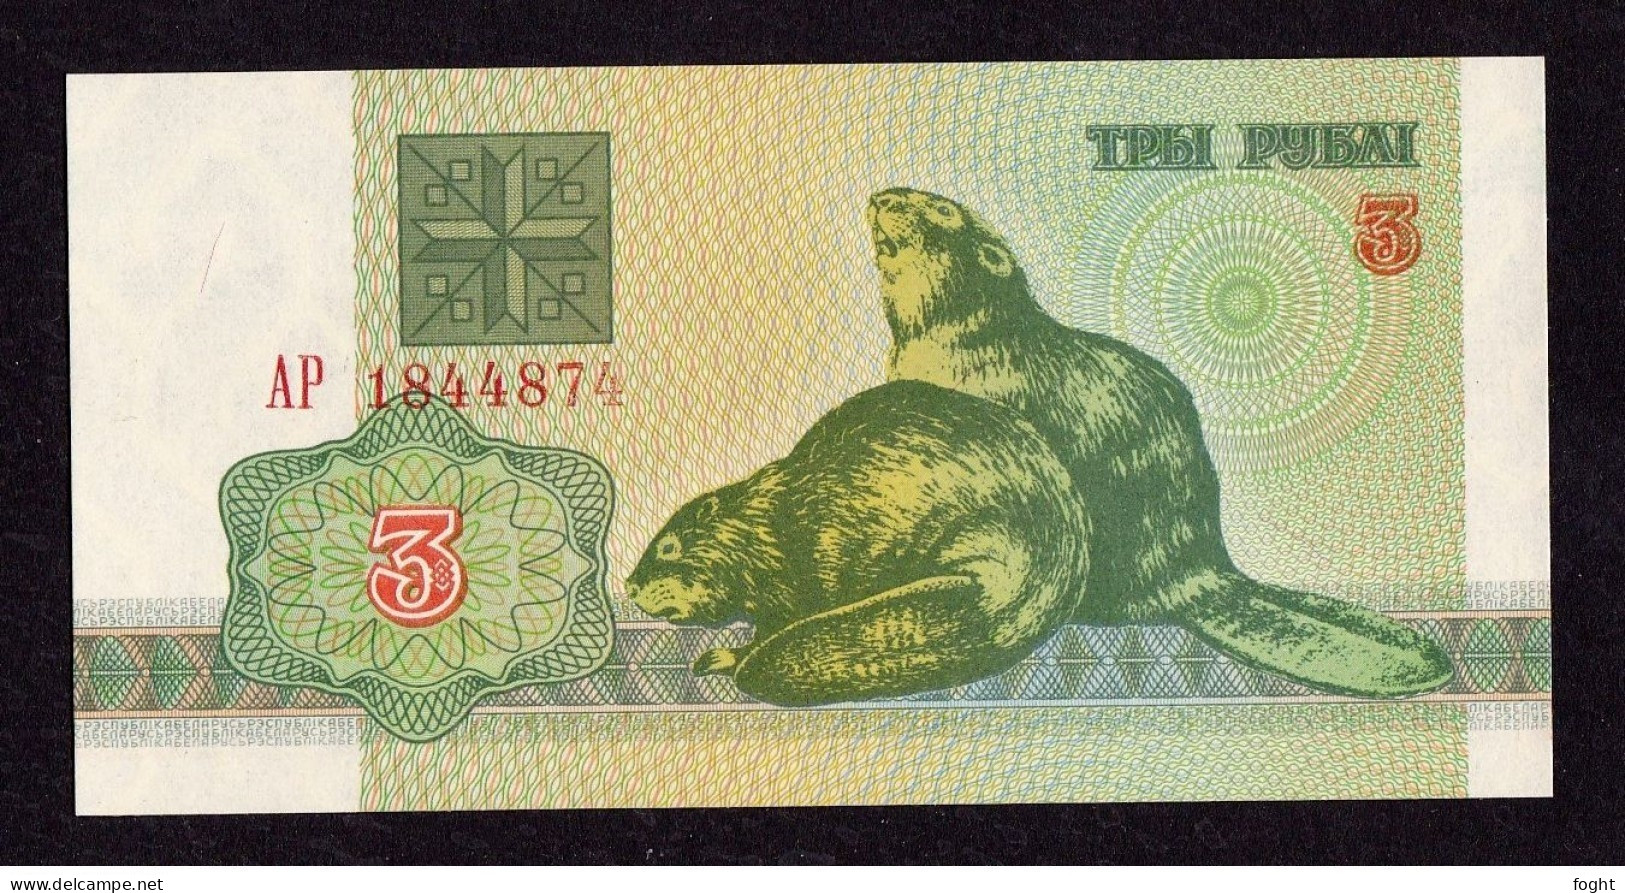 1992 АР Belarus Belarus National Bank Banknote 3 Rublei,P#3 - Wit-Rusland